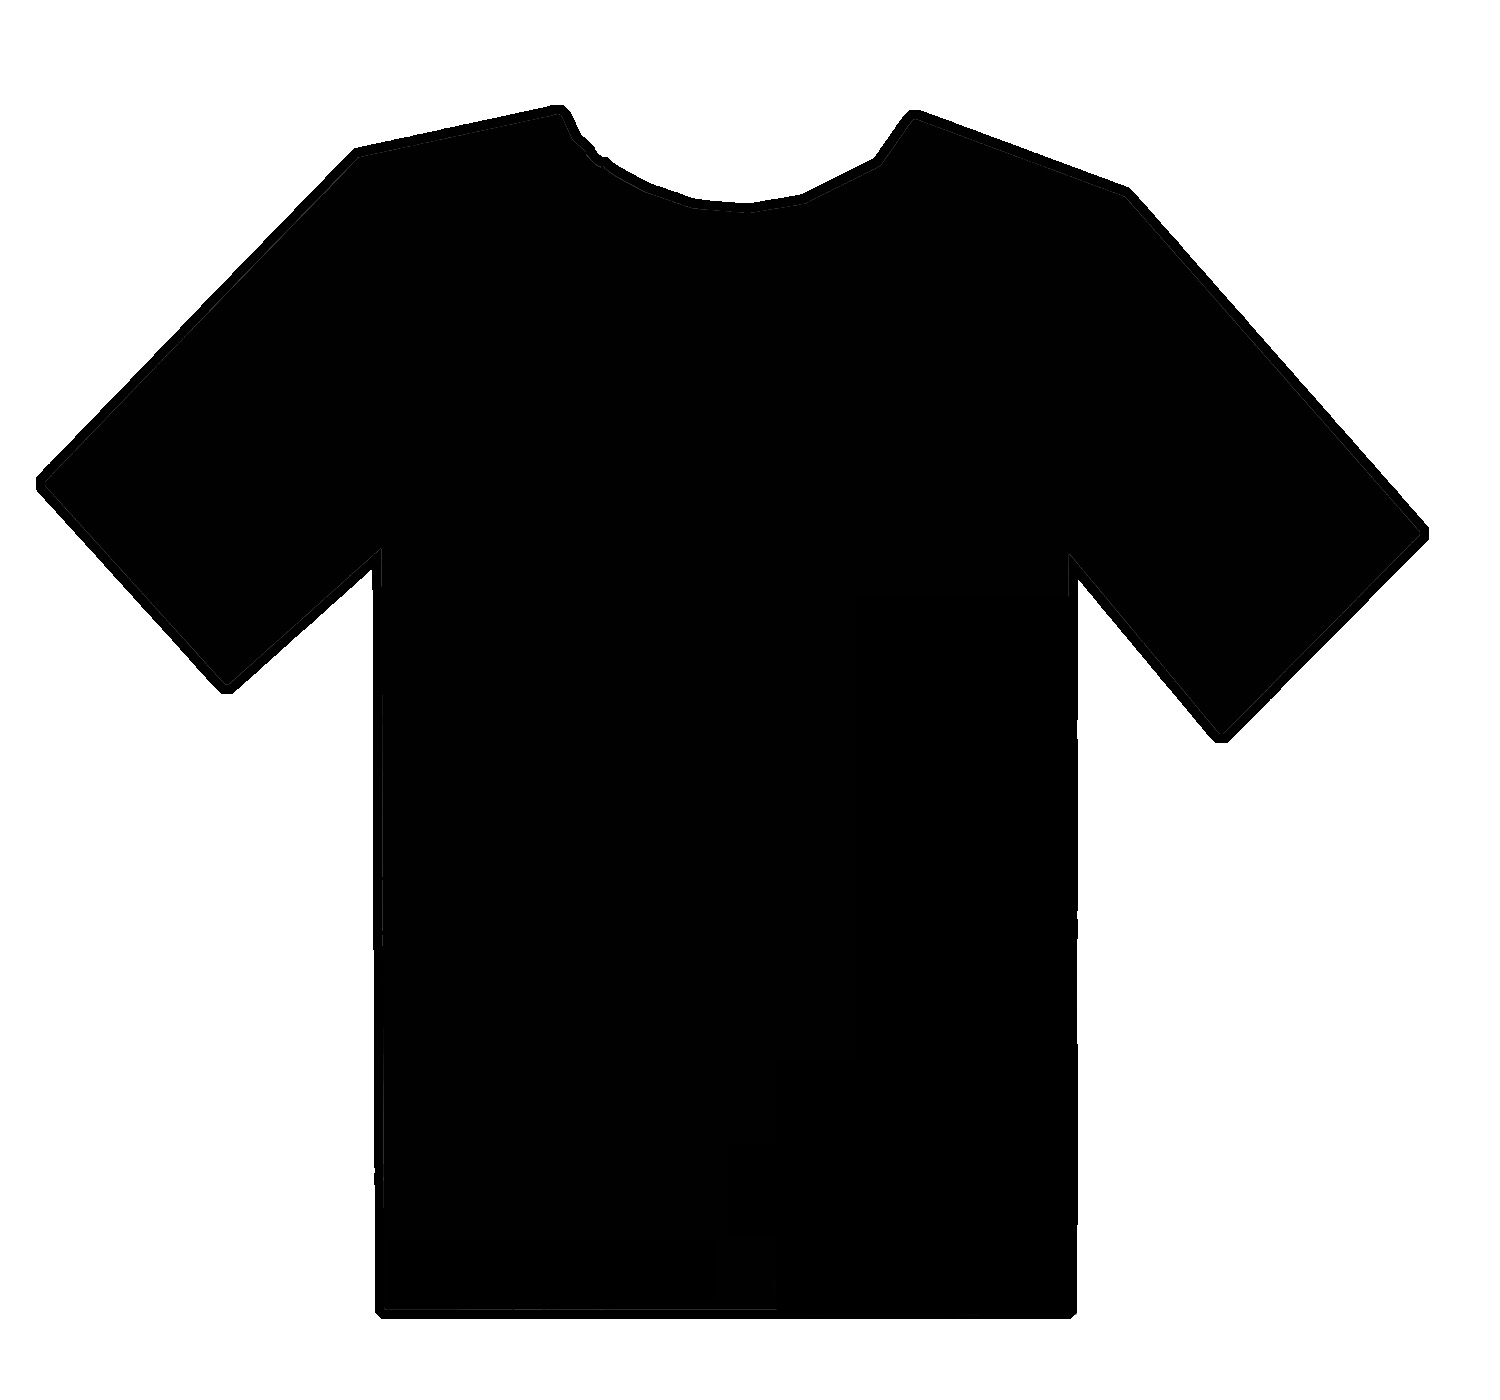 A Blank Black T Shirt Design - ClipArt Best